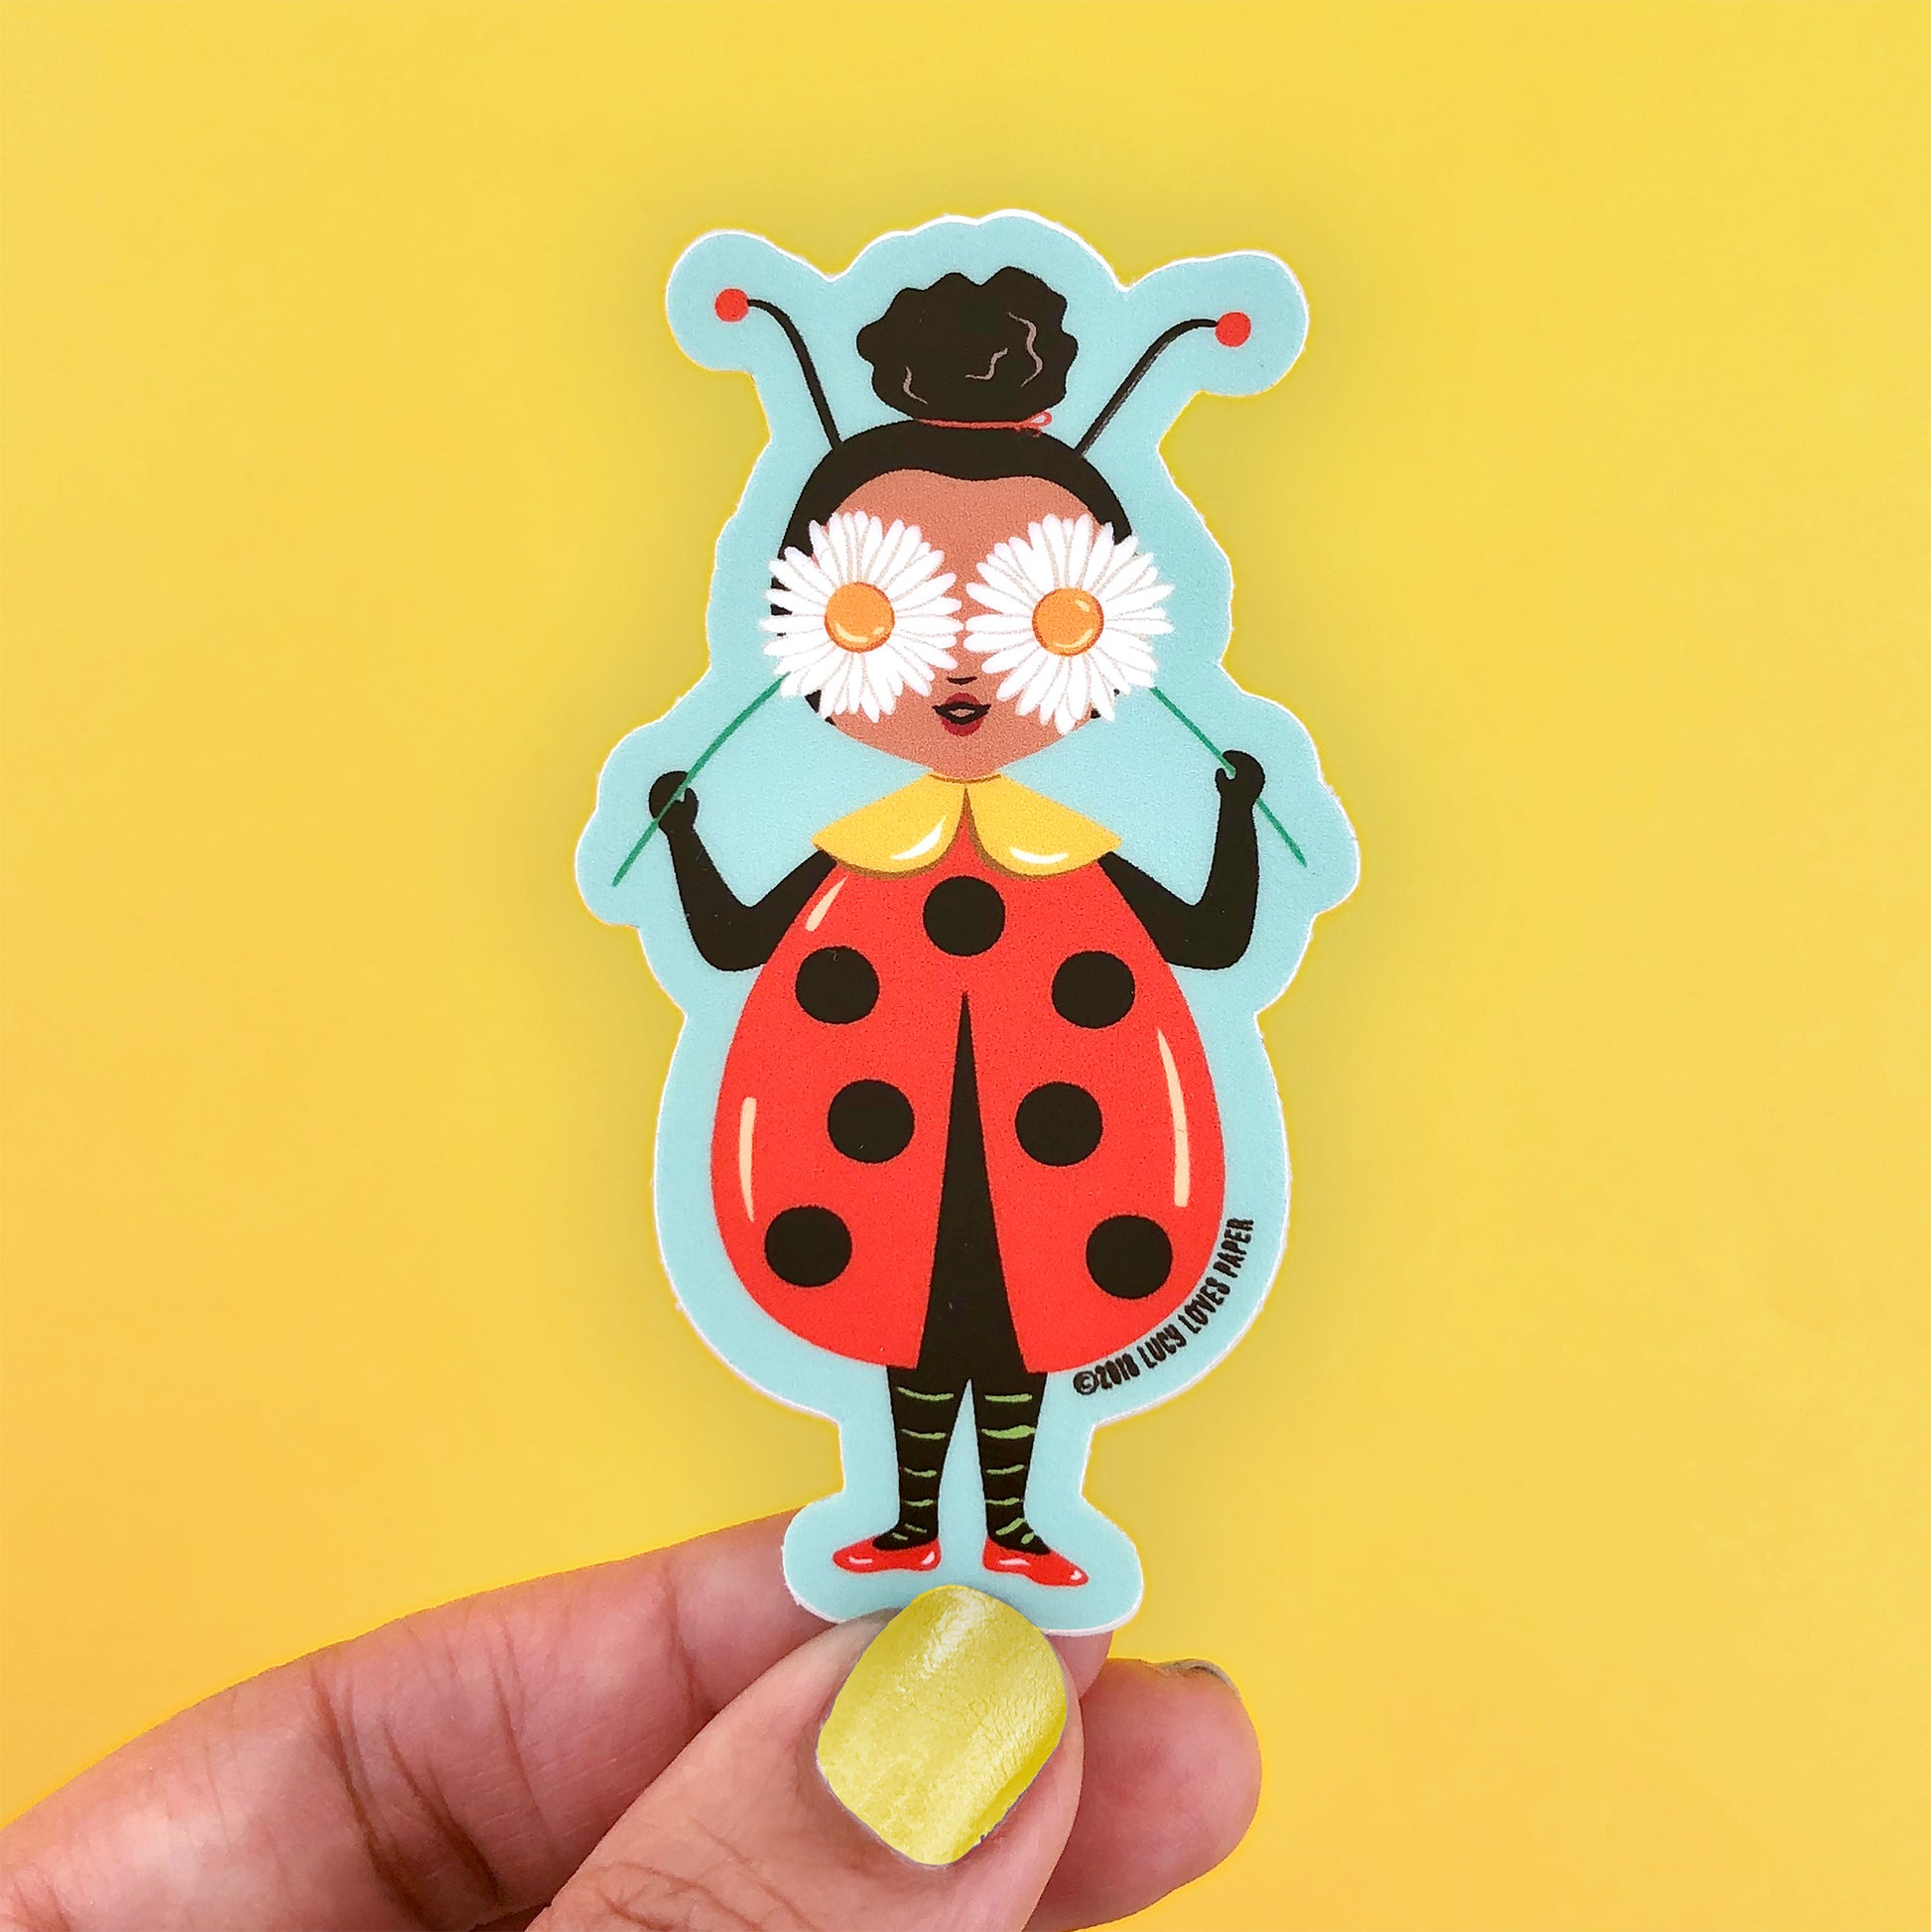 The Ladybug Sticker